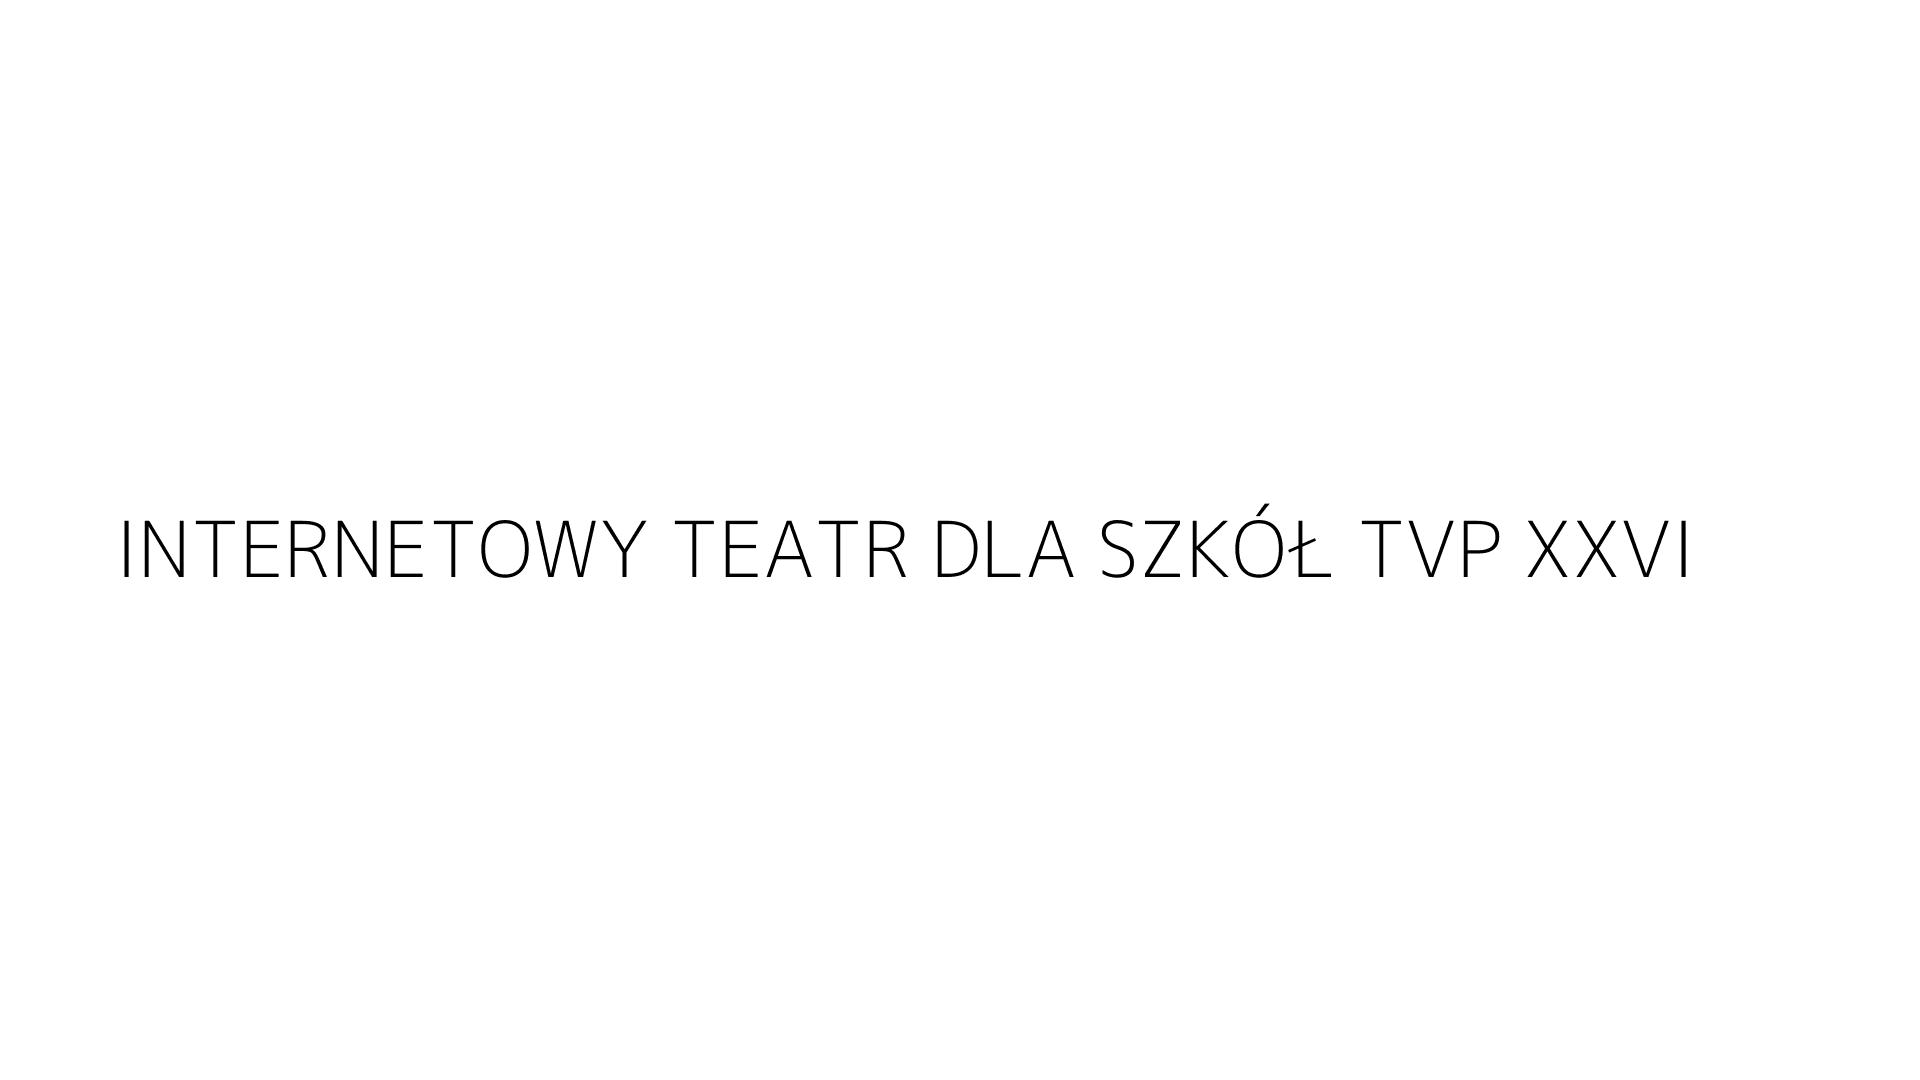 INTERNETOWY TEATR DLA SZKÓŁ TVP XXVI